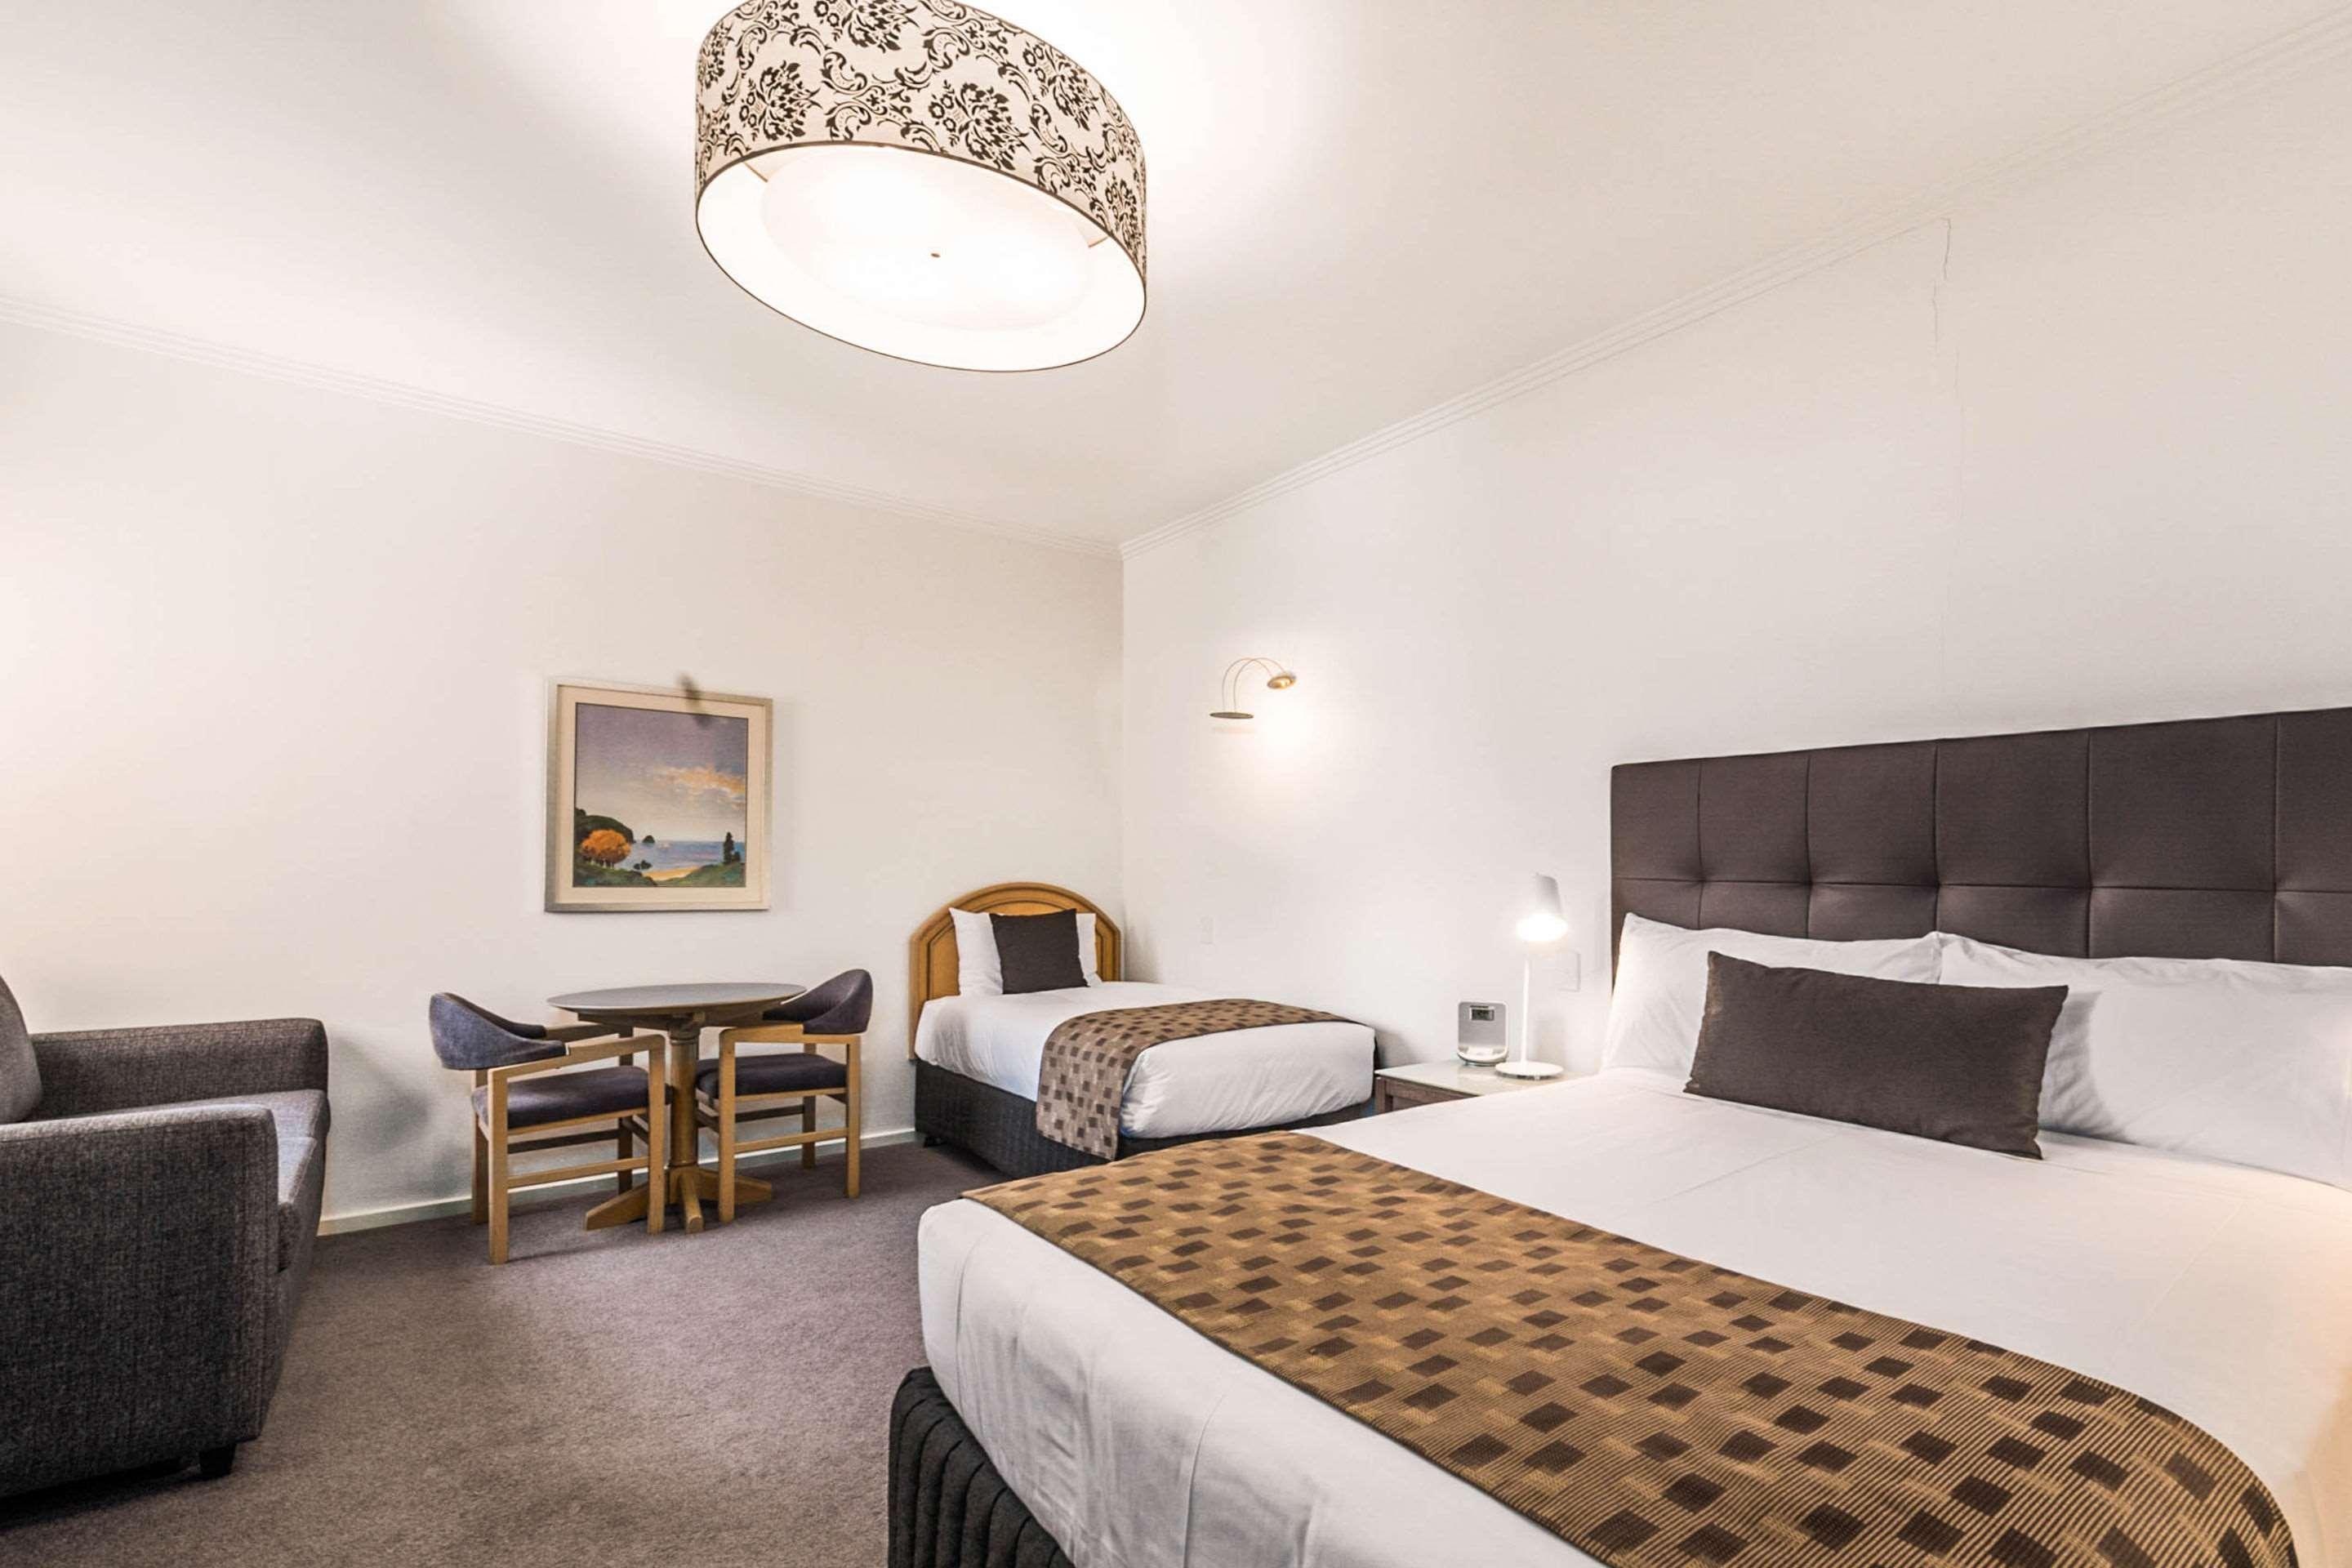 Quality Hotel Wangaratta Gateway Zewnętrze zdjęcie